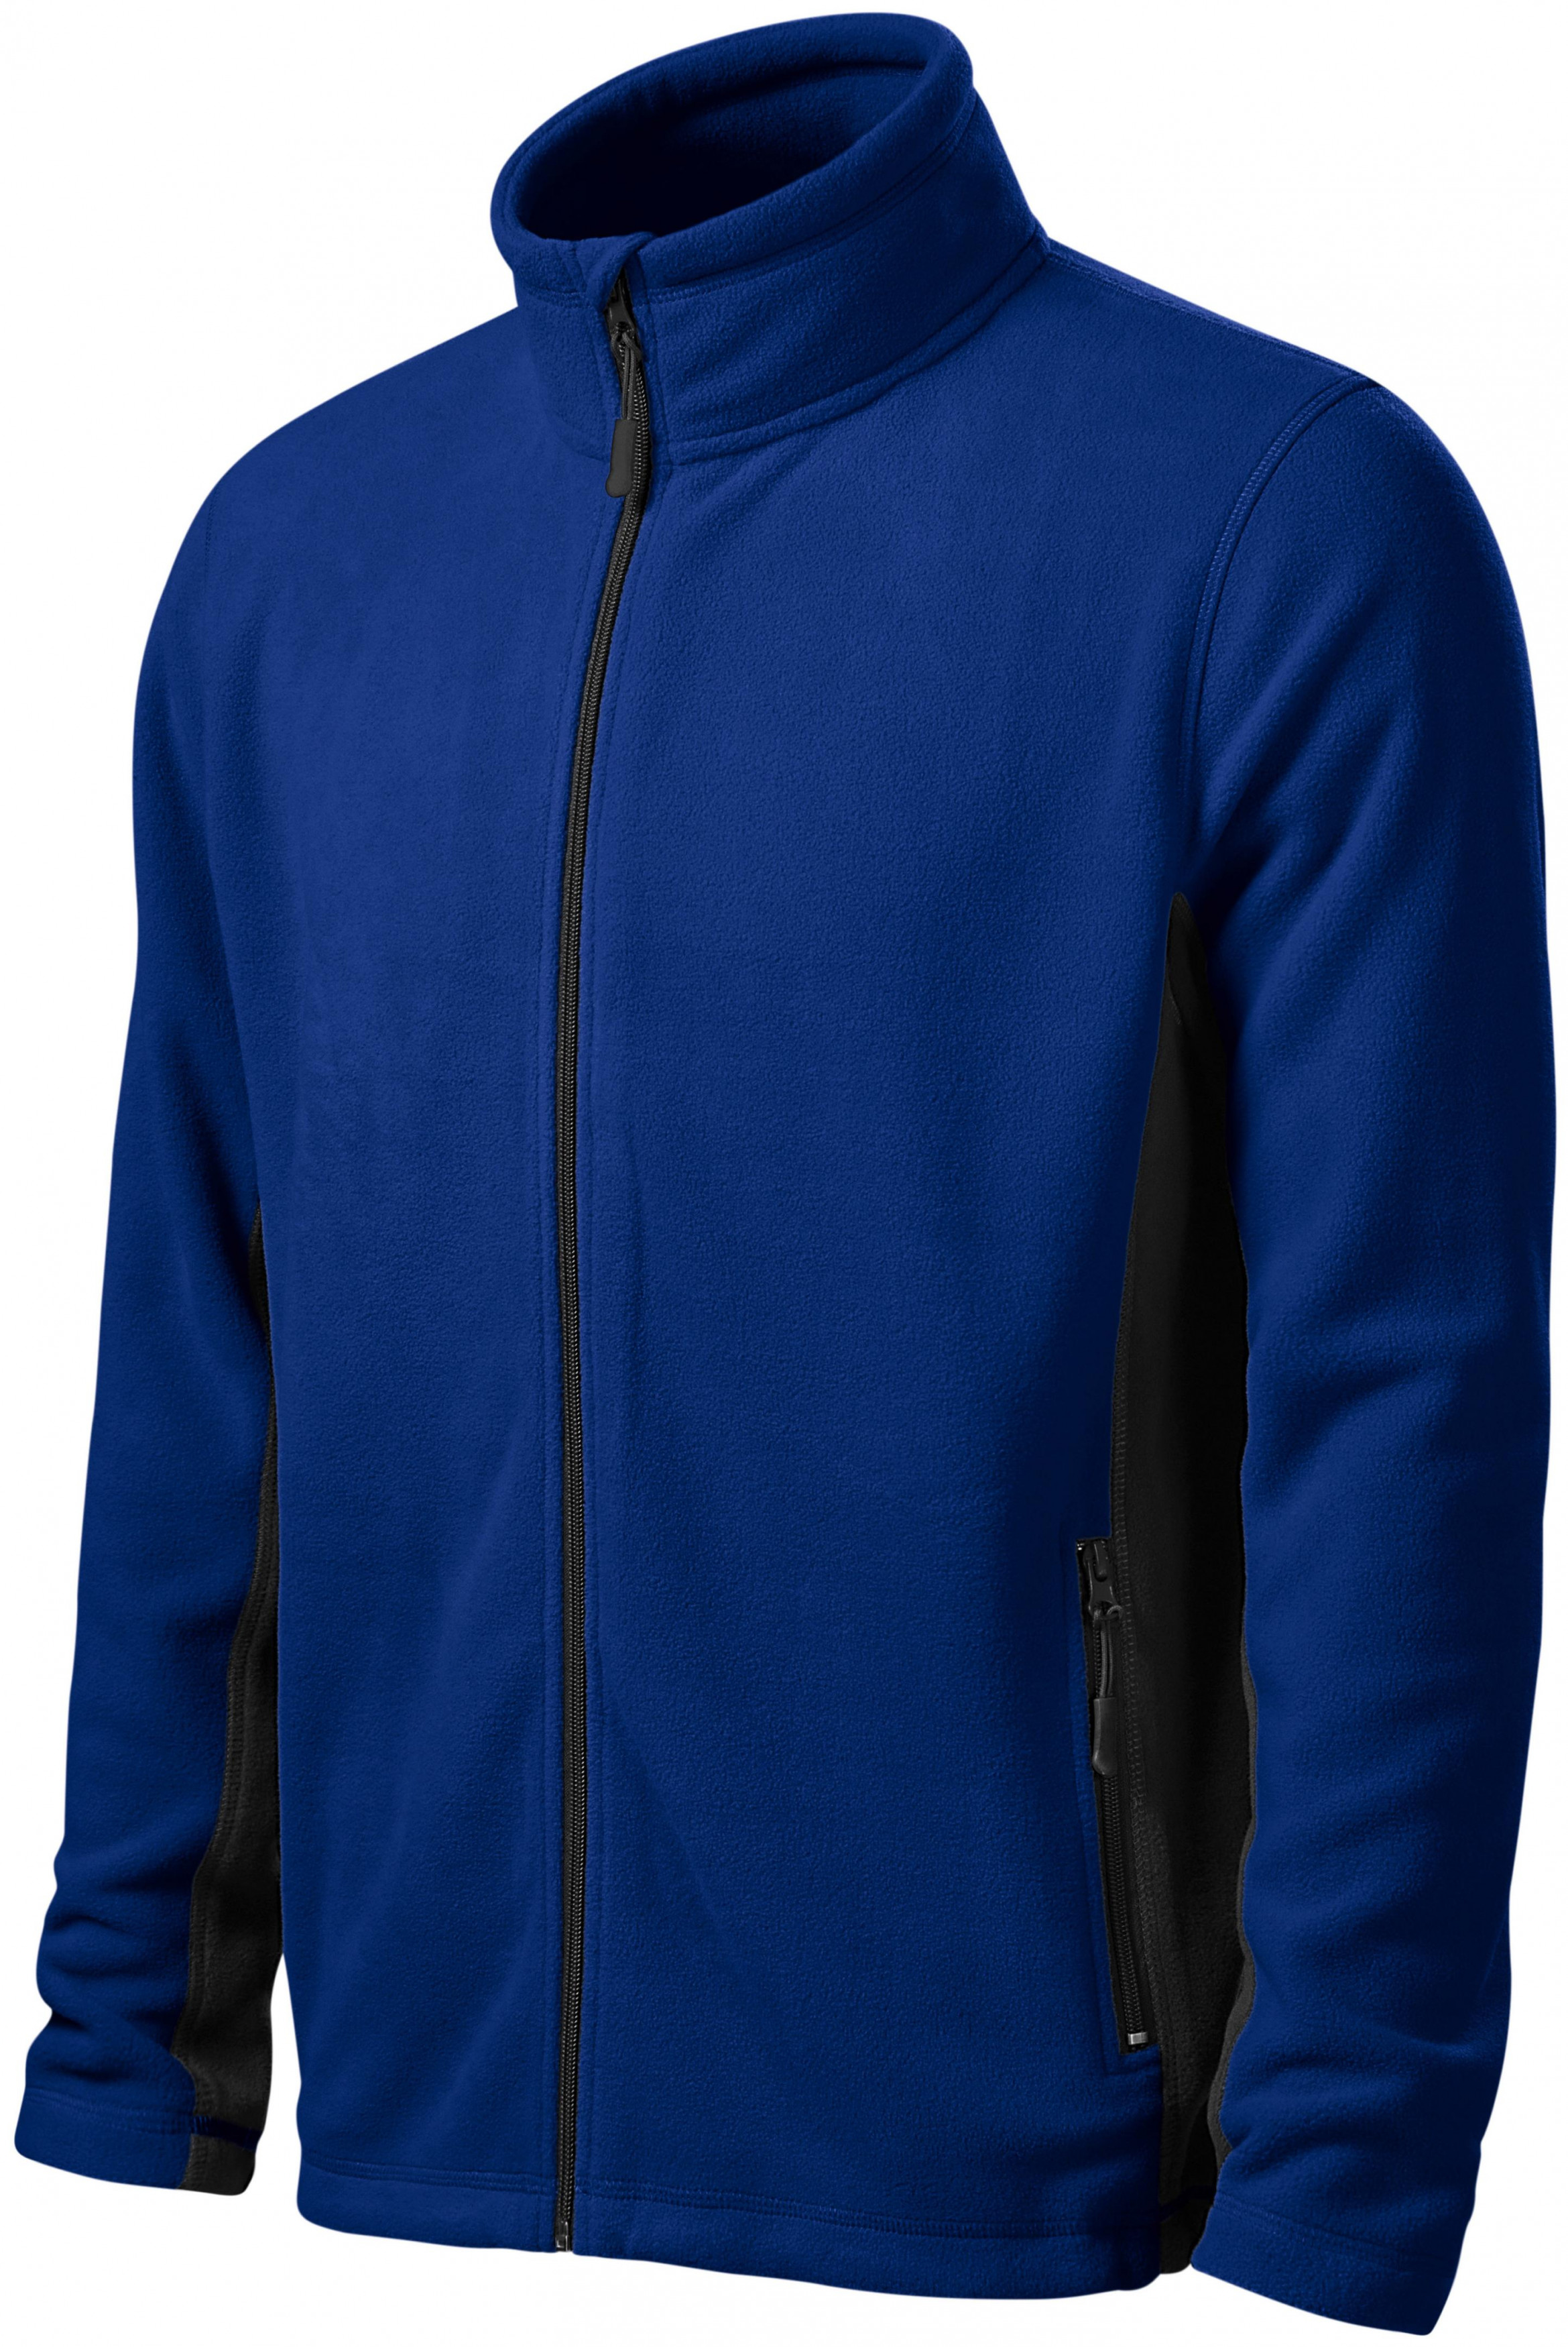 Pánska fleecová bunda kontrastná, kráľovská modrá, 4XL